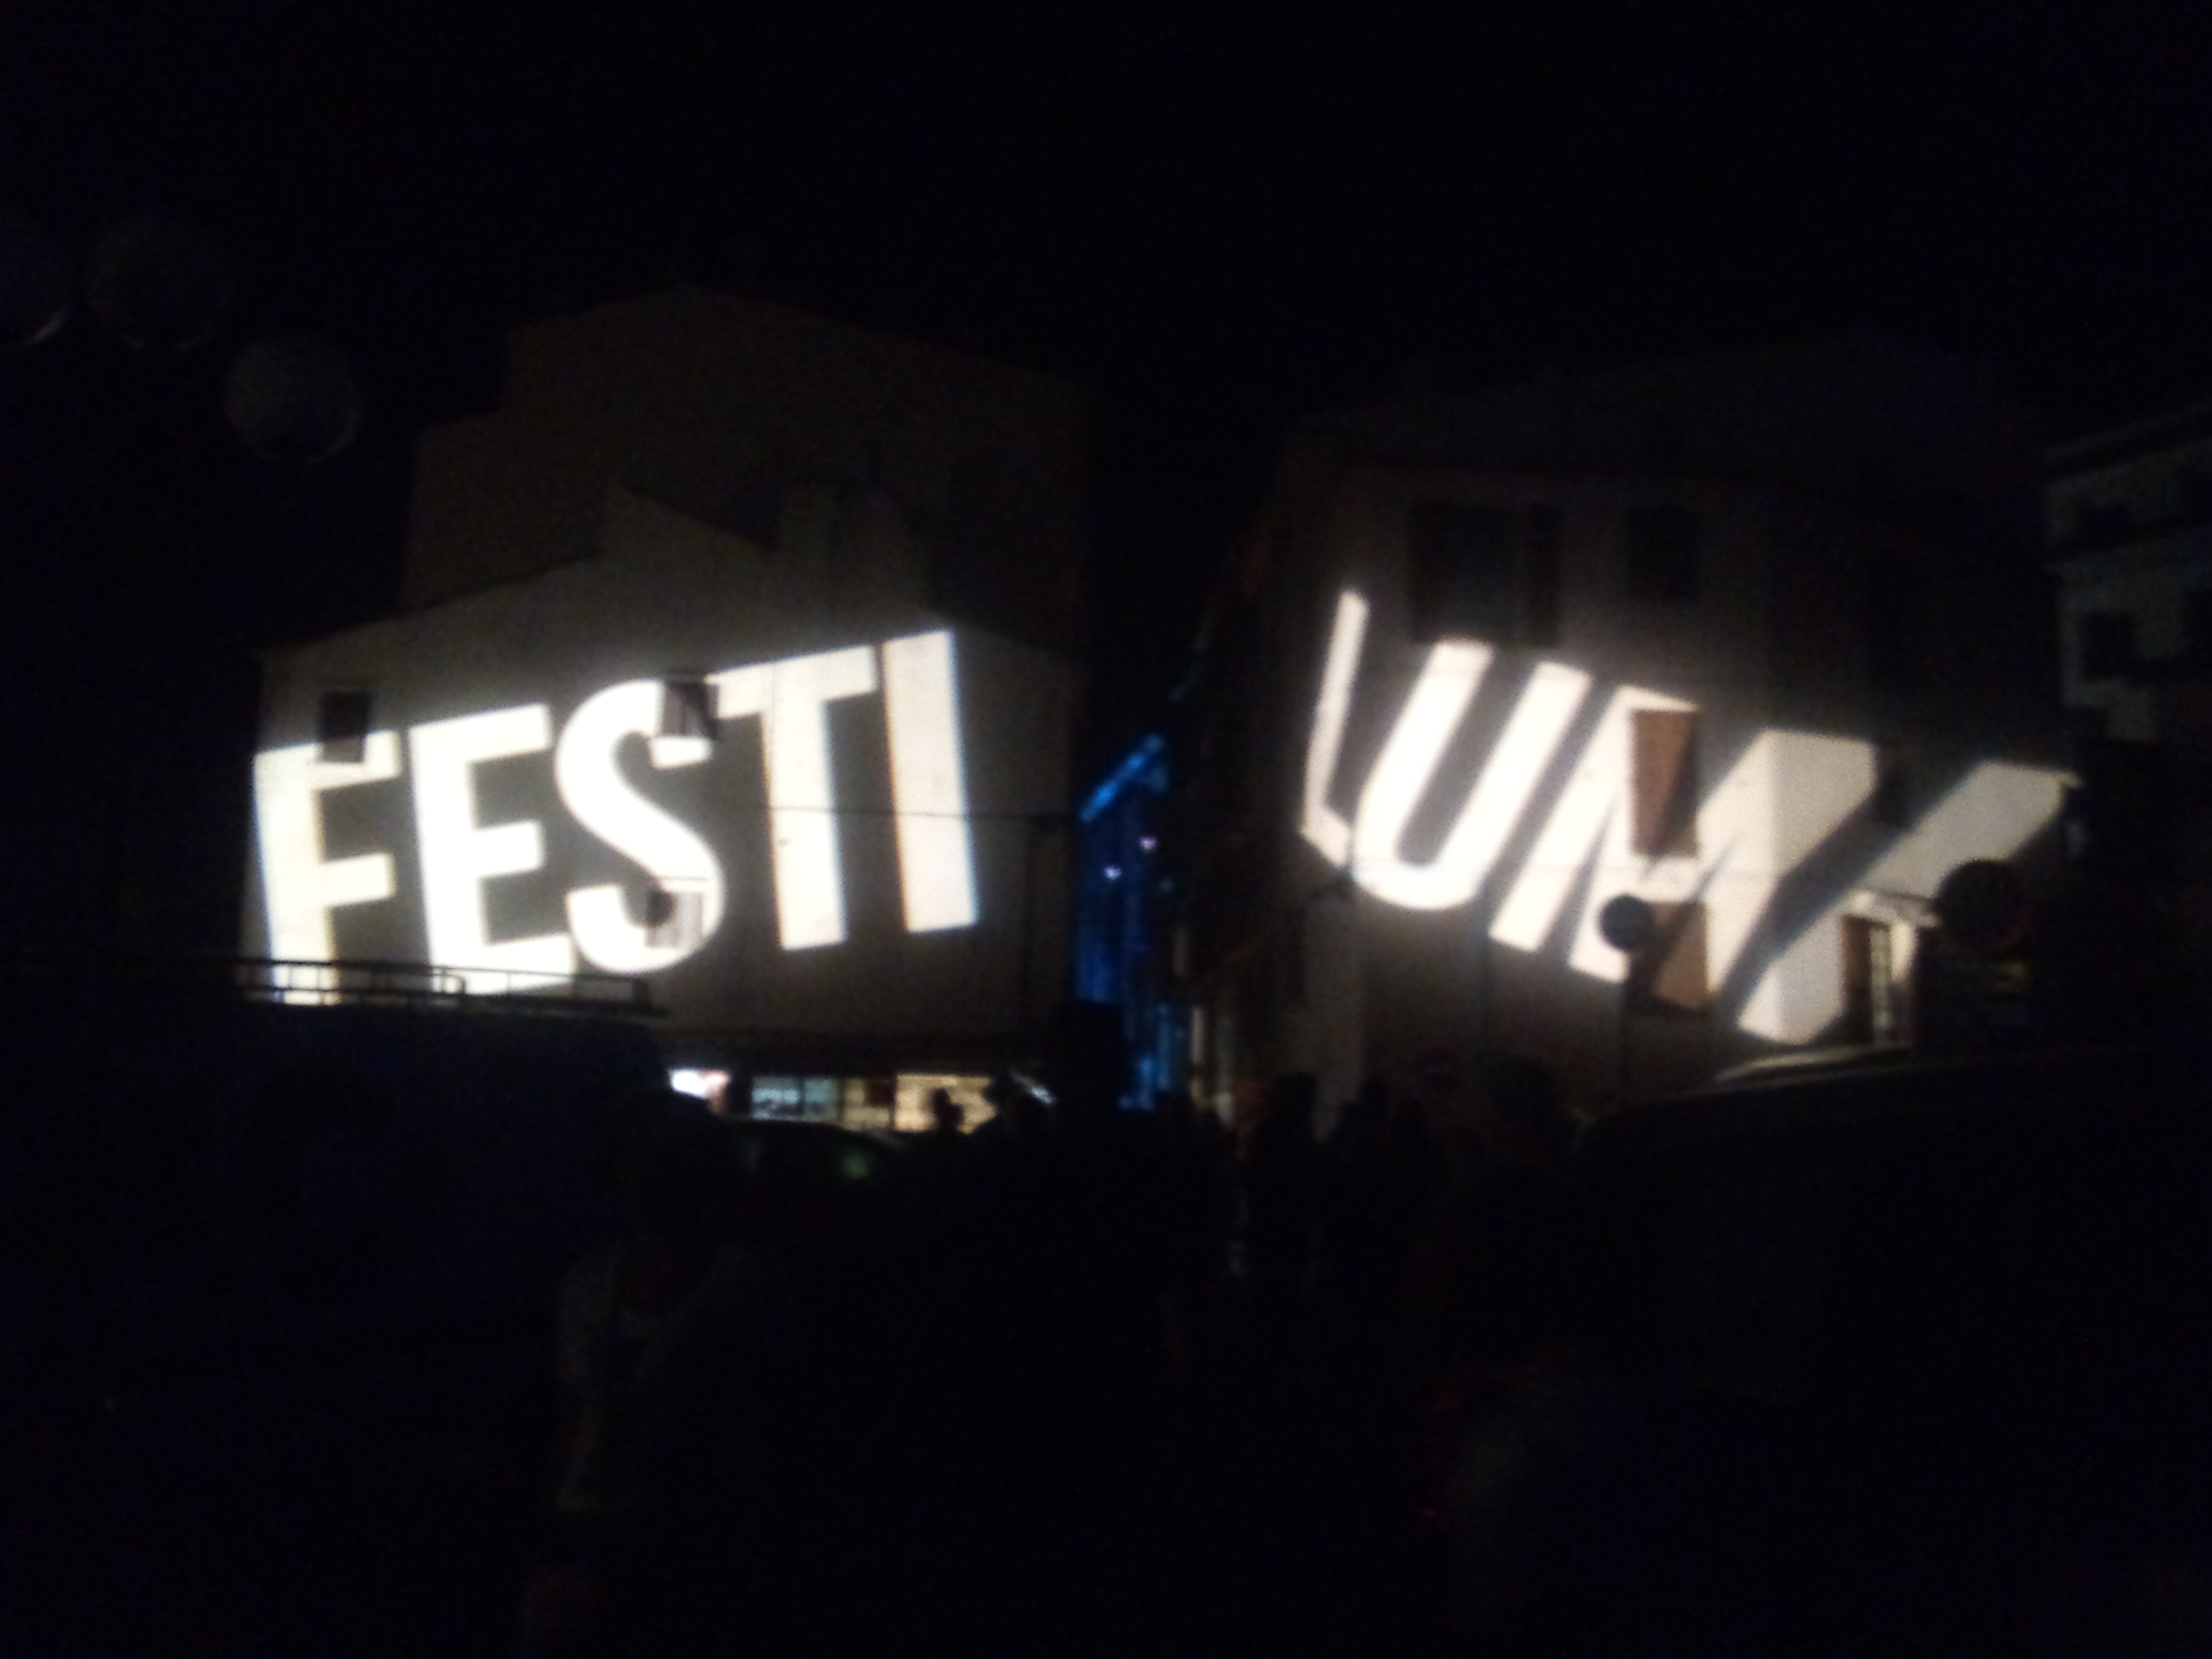 EN IMAGES. Festi Lumi : Bonifacio, vêtu d'art et de lumière pour ce 6eme festival